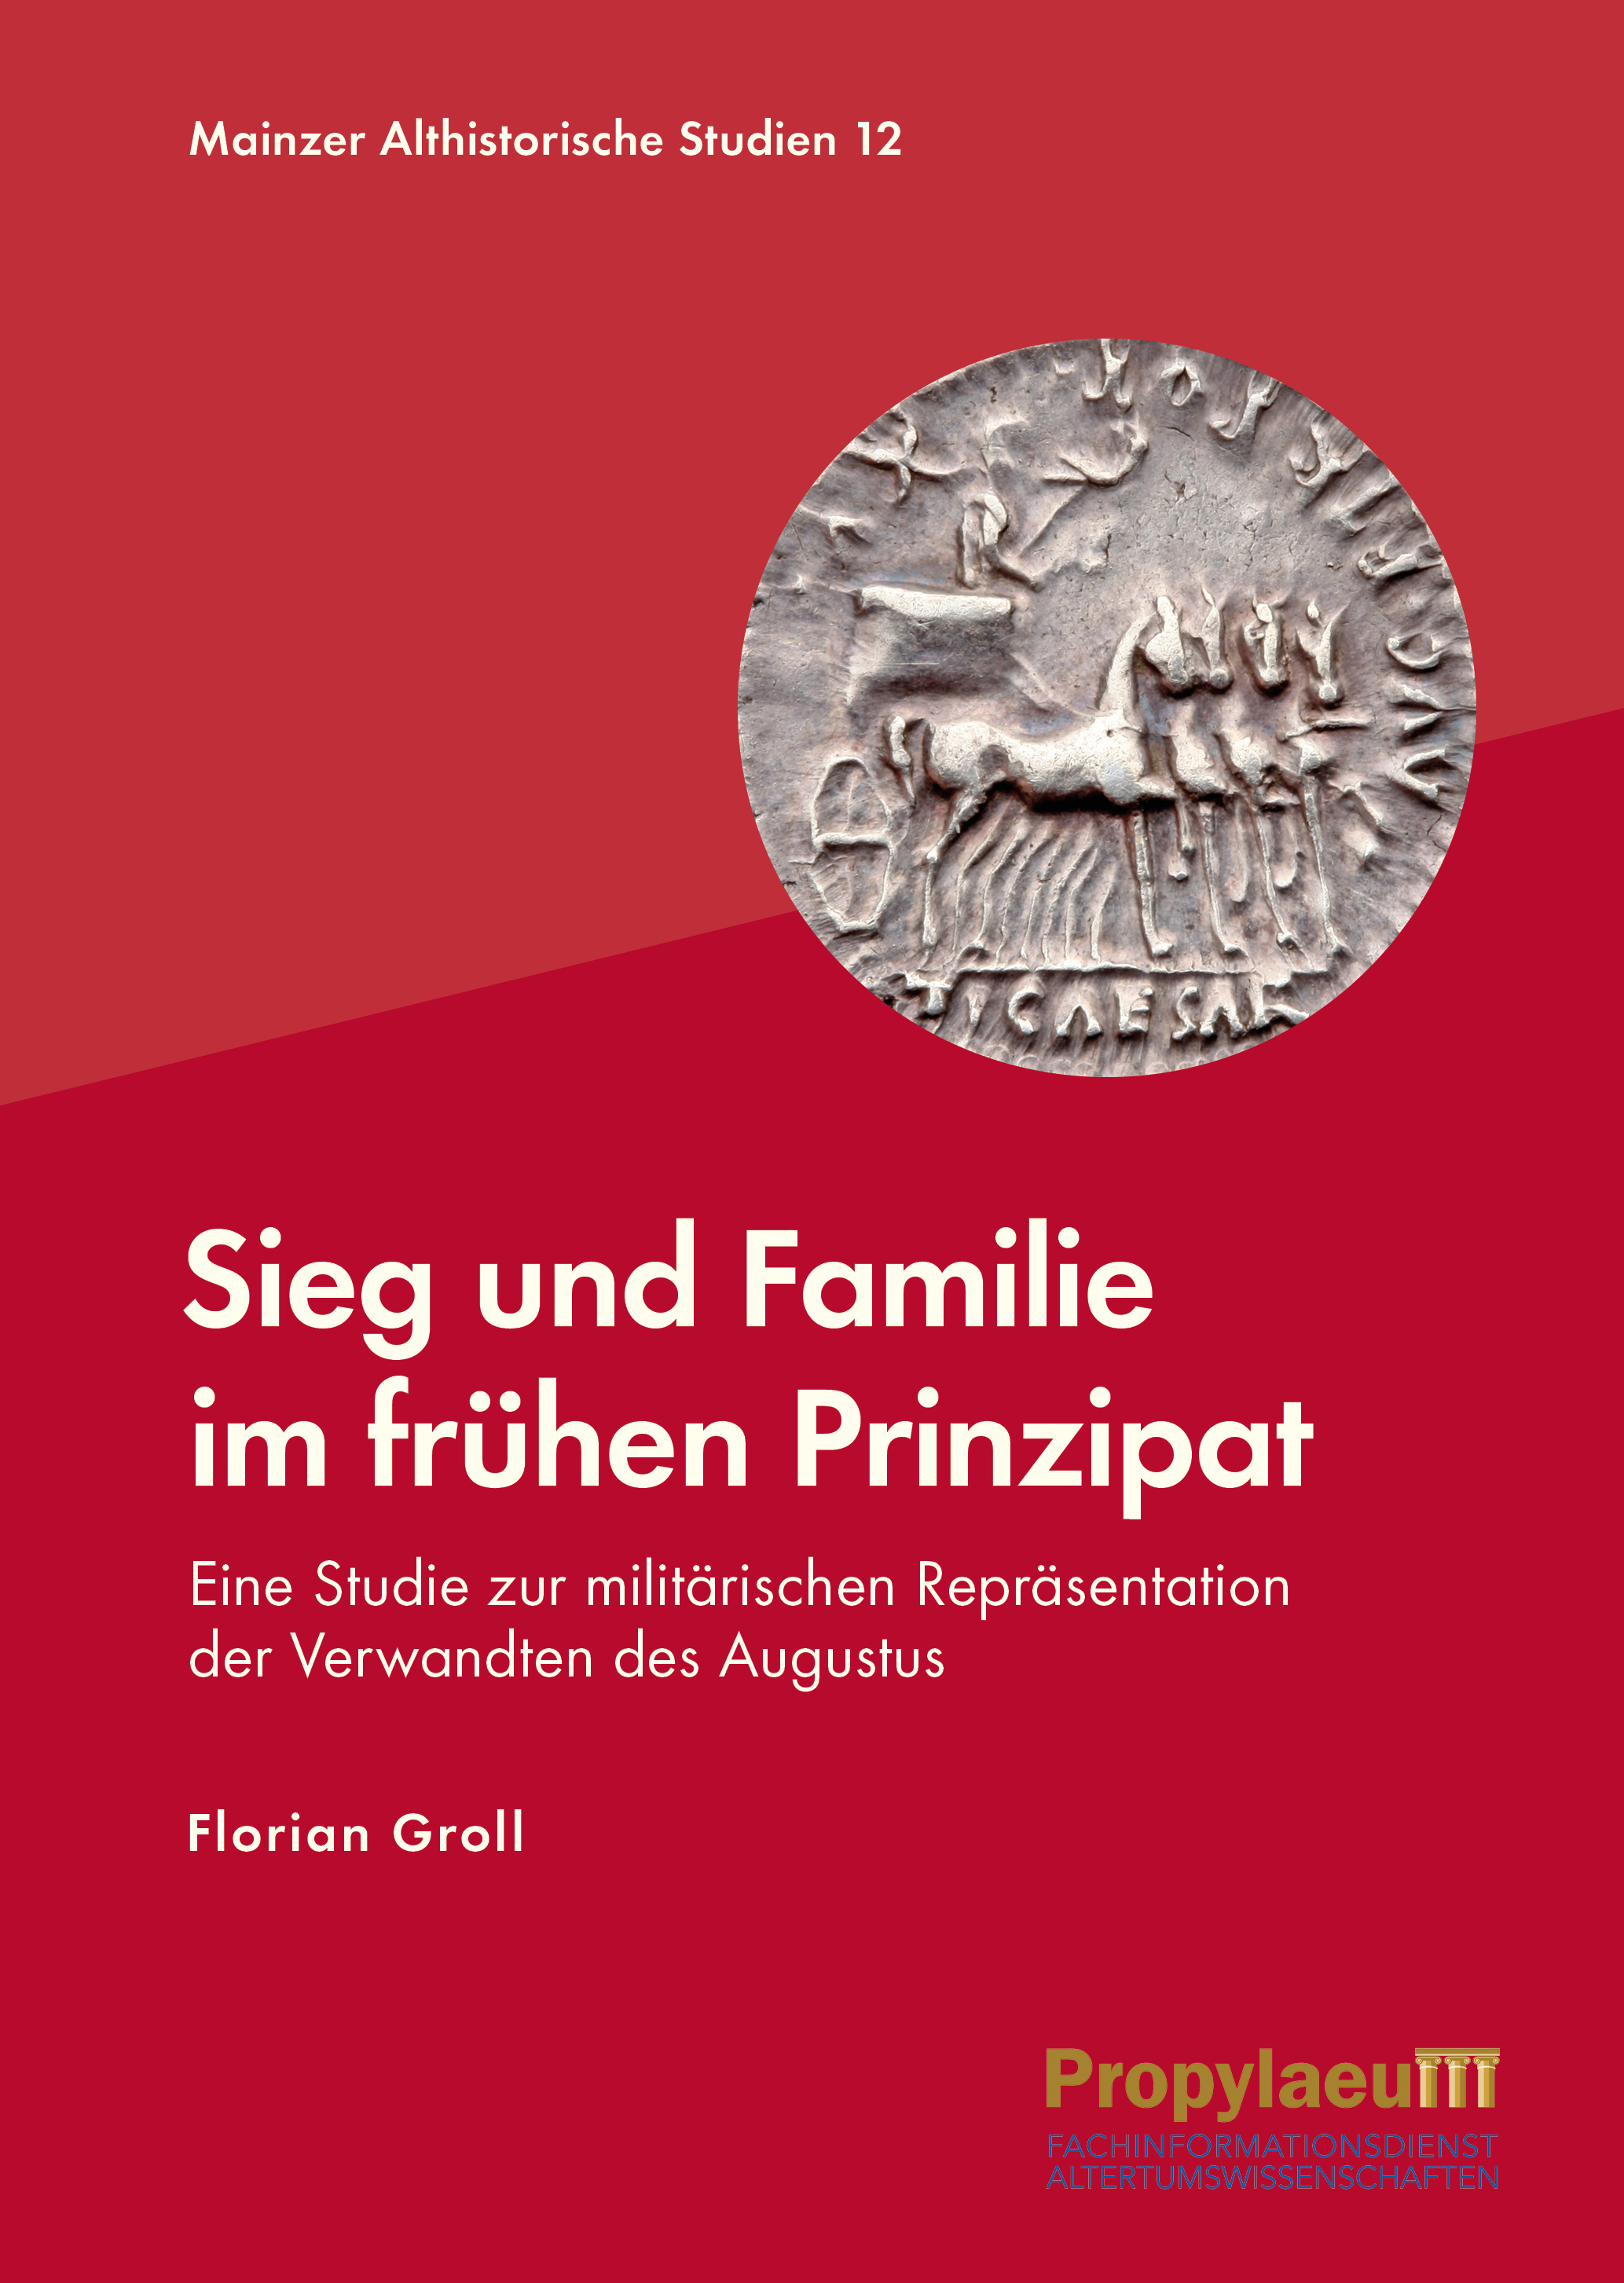 Weitere Informationen über 'Sieg und Familie im frühen Prinzipat'